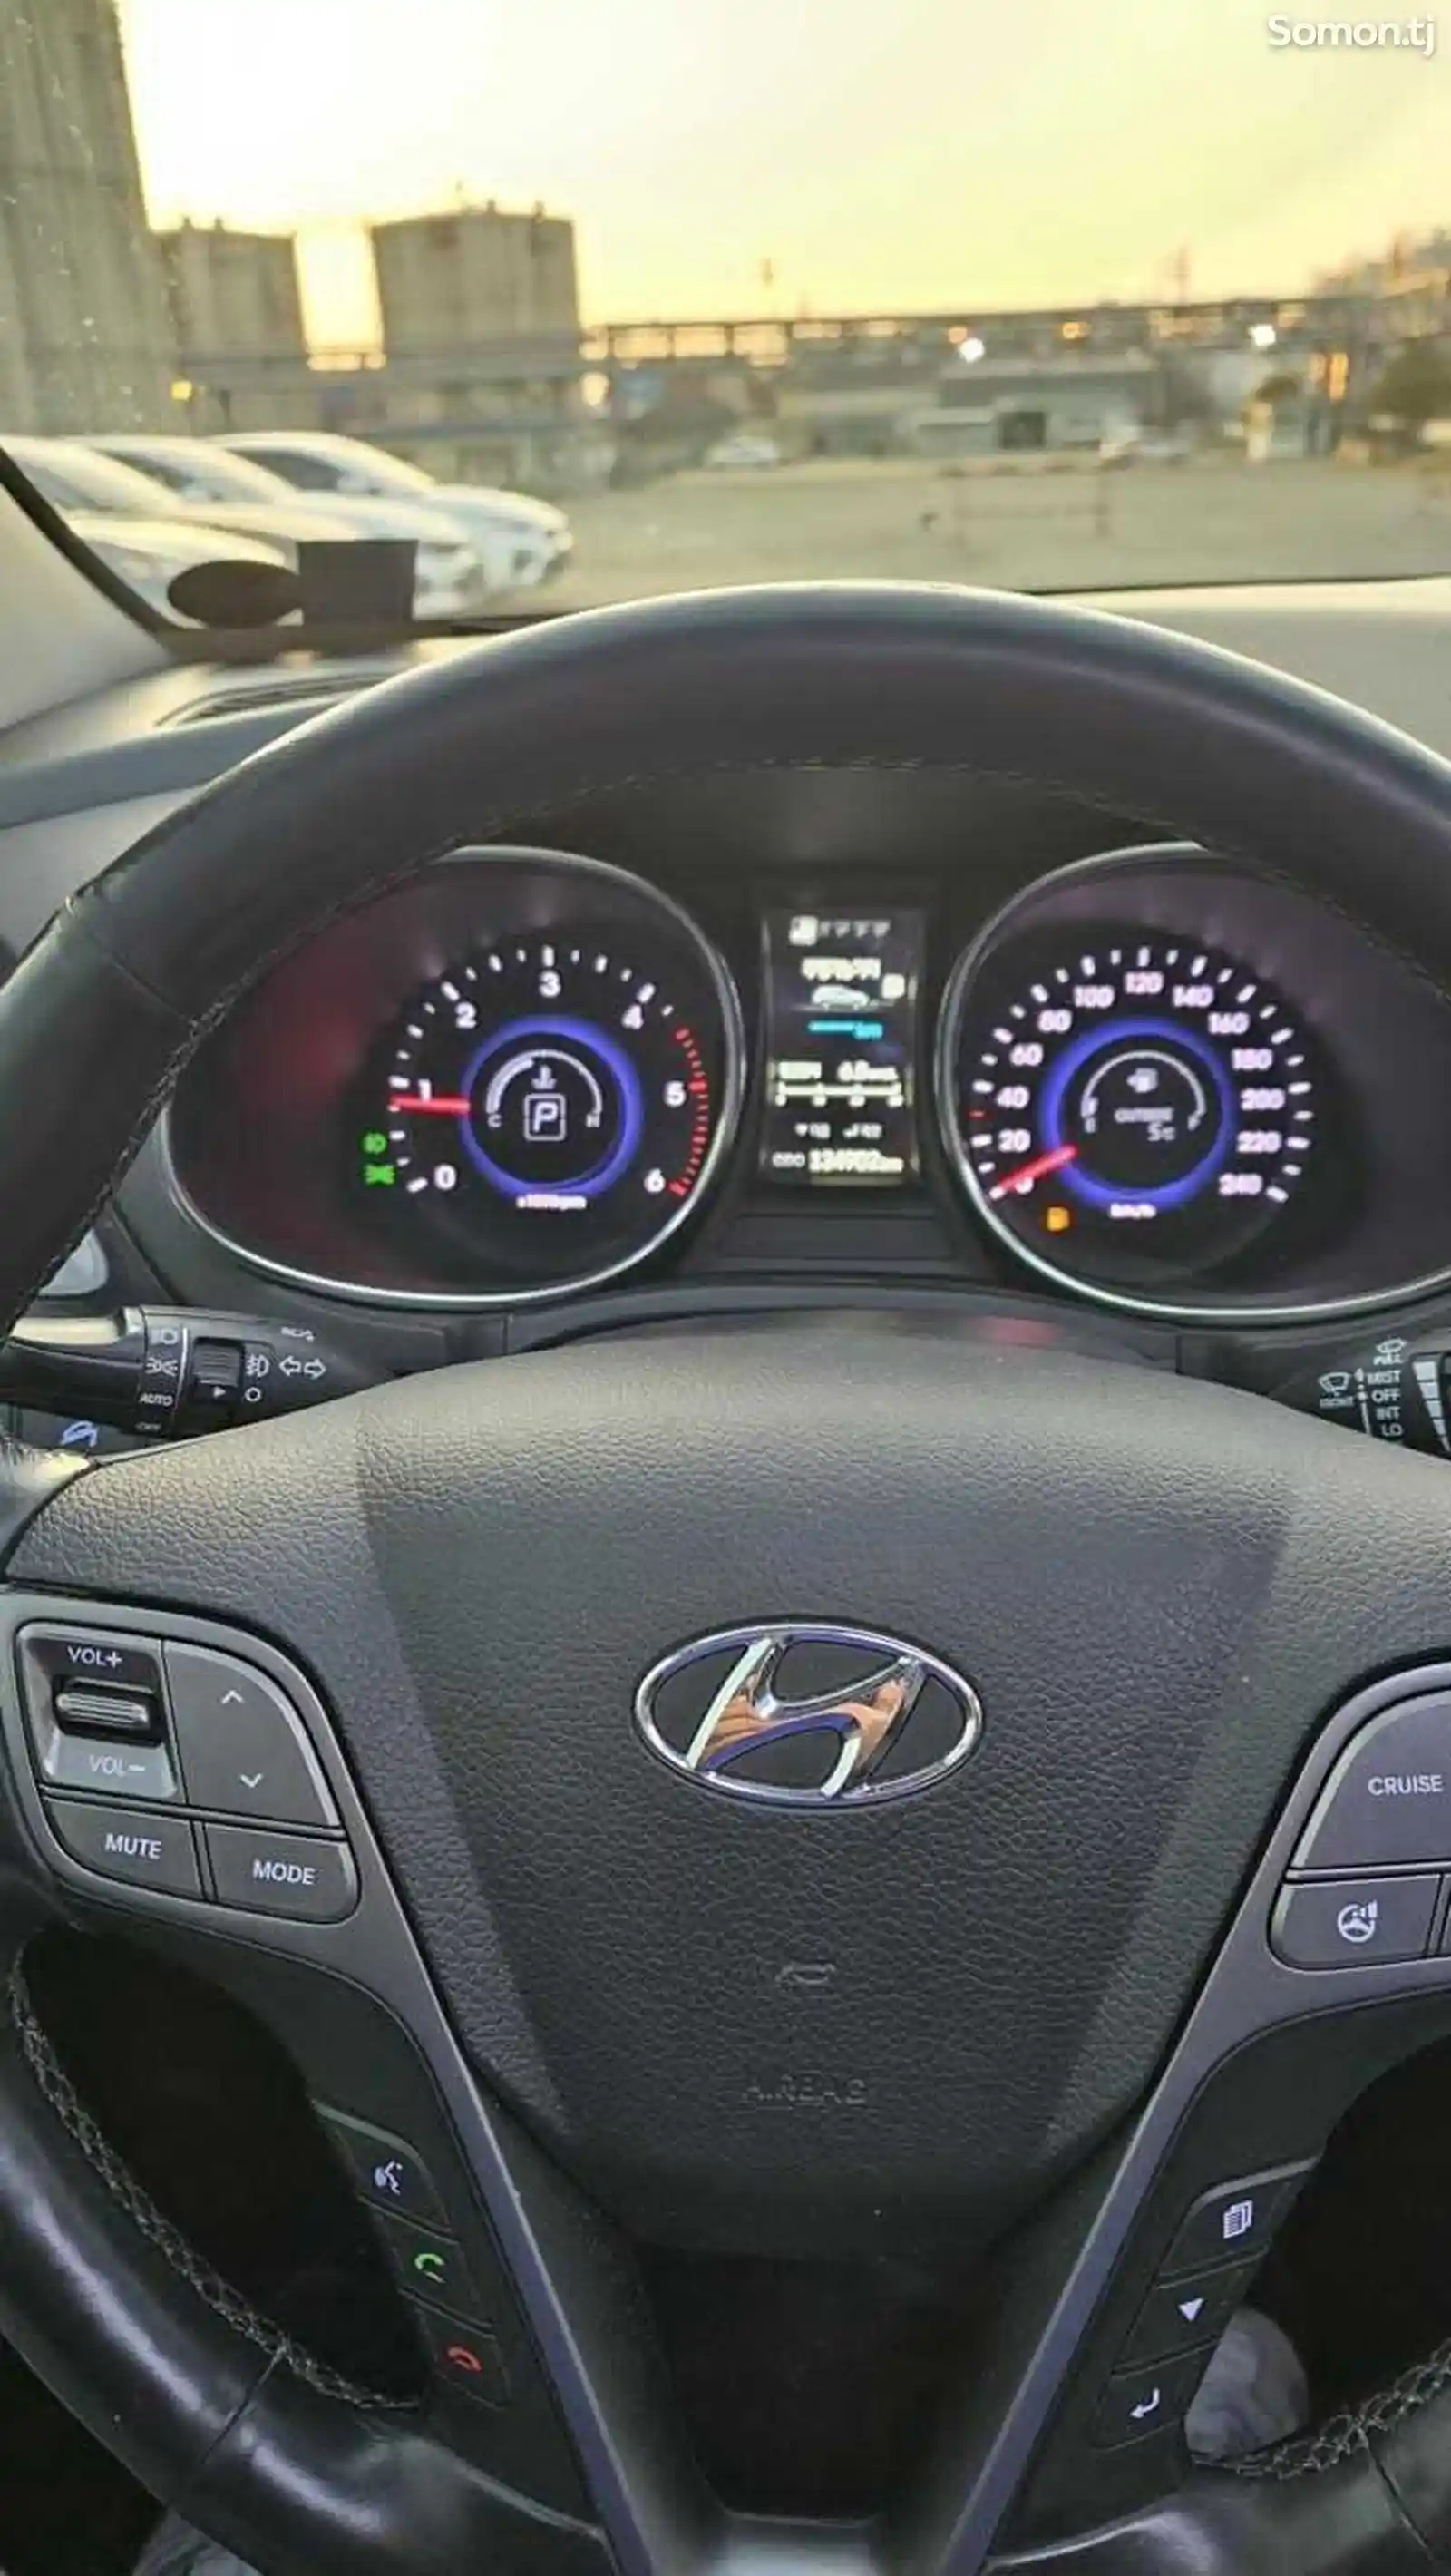 Hyundai Santa Fe, 2014-11